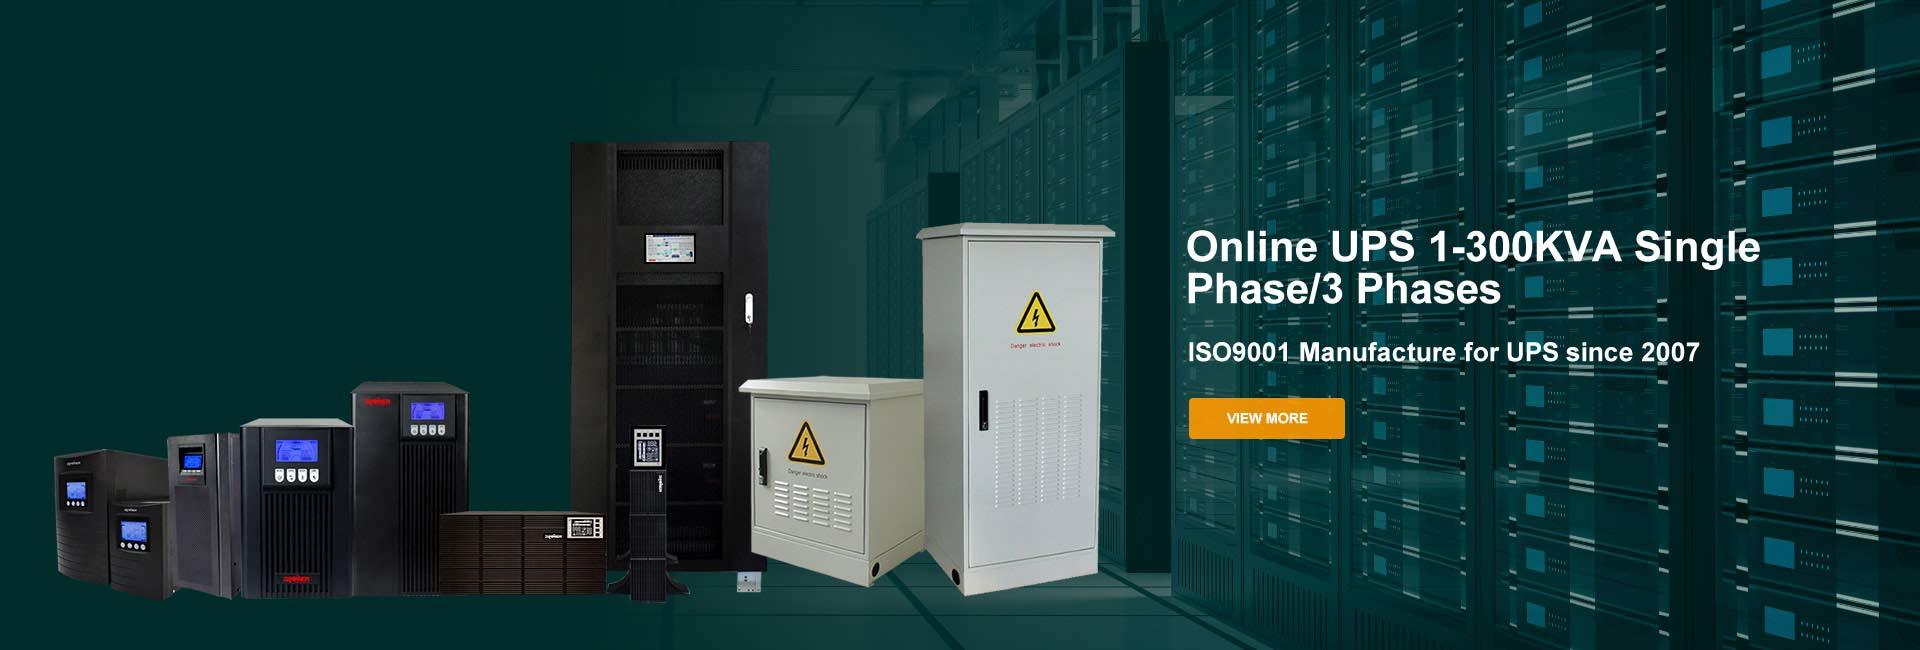 Online UPS 1-300KVA single phase/3 phases